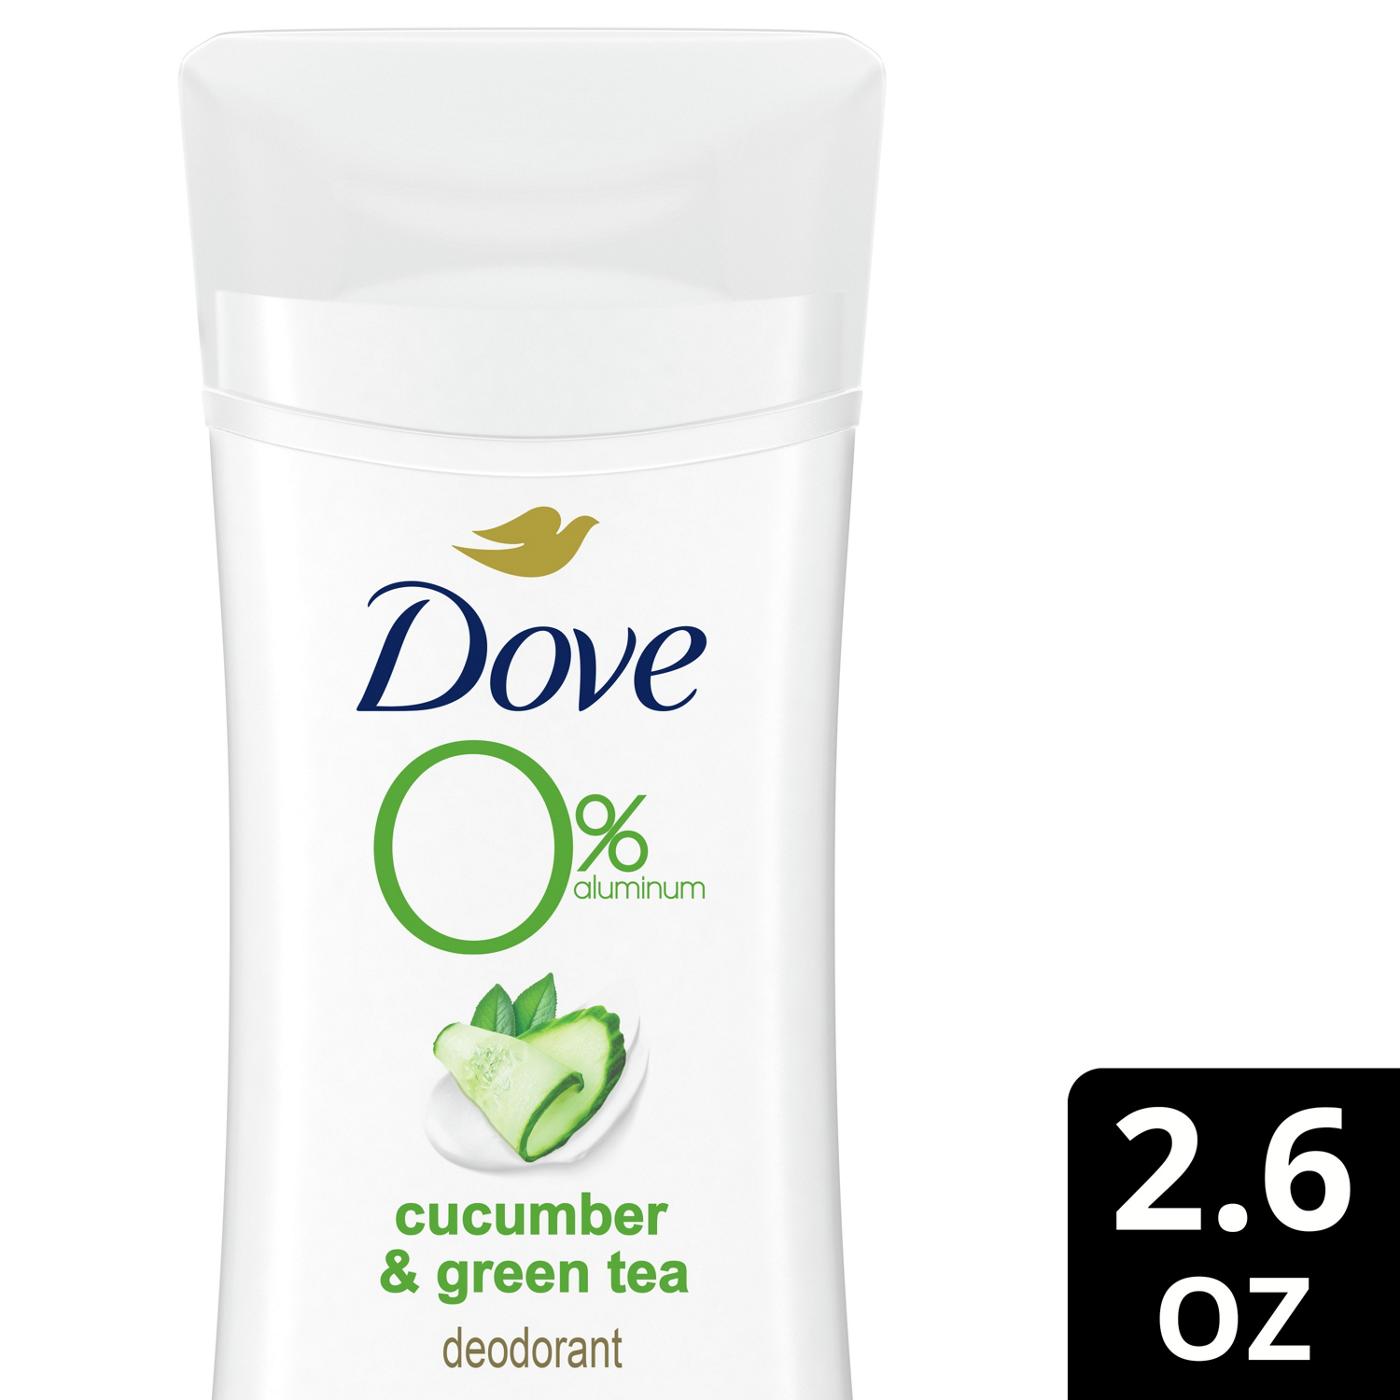 Dove 0% Aluminum Deodorant - Cucumber & Green Tea; image 2 of 8